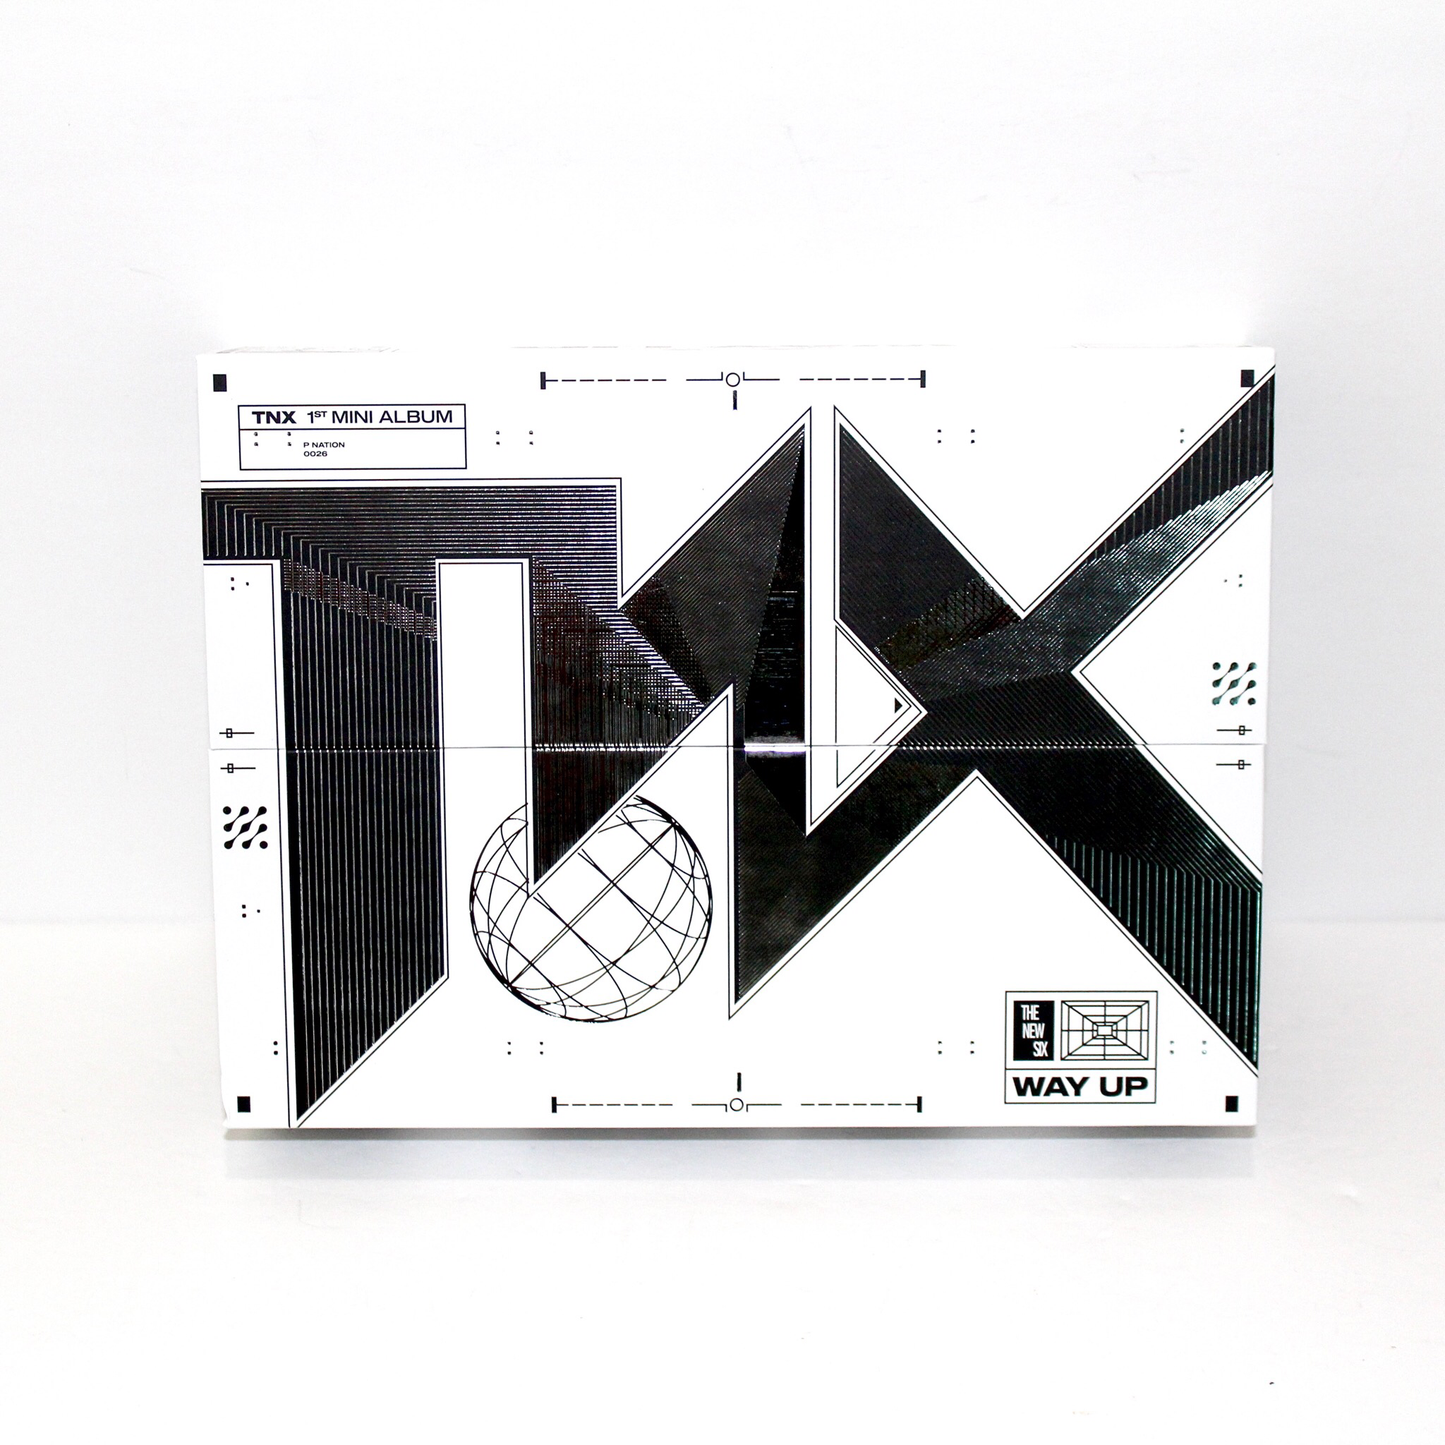 TNX 1st Mini Album: WAY UP